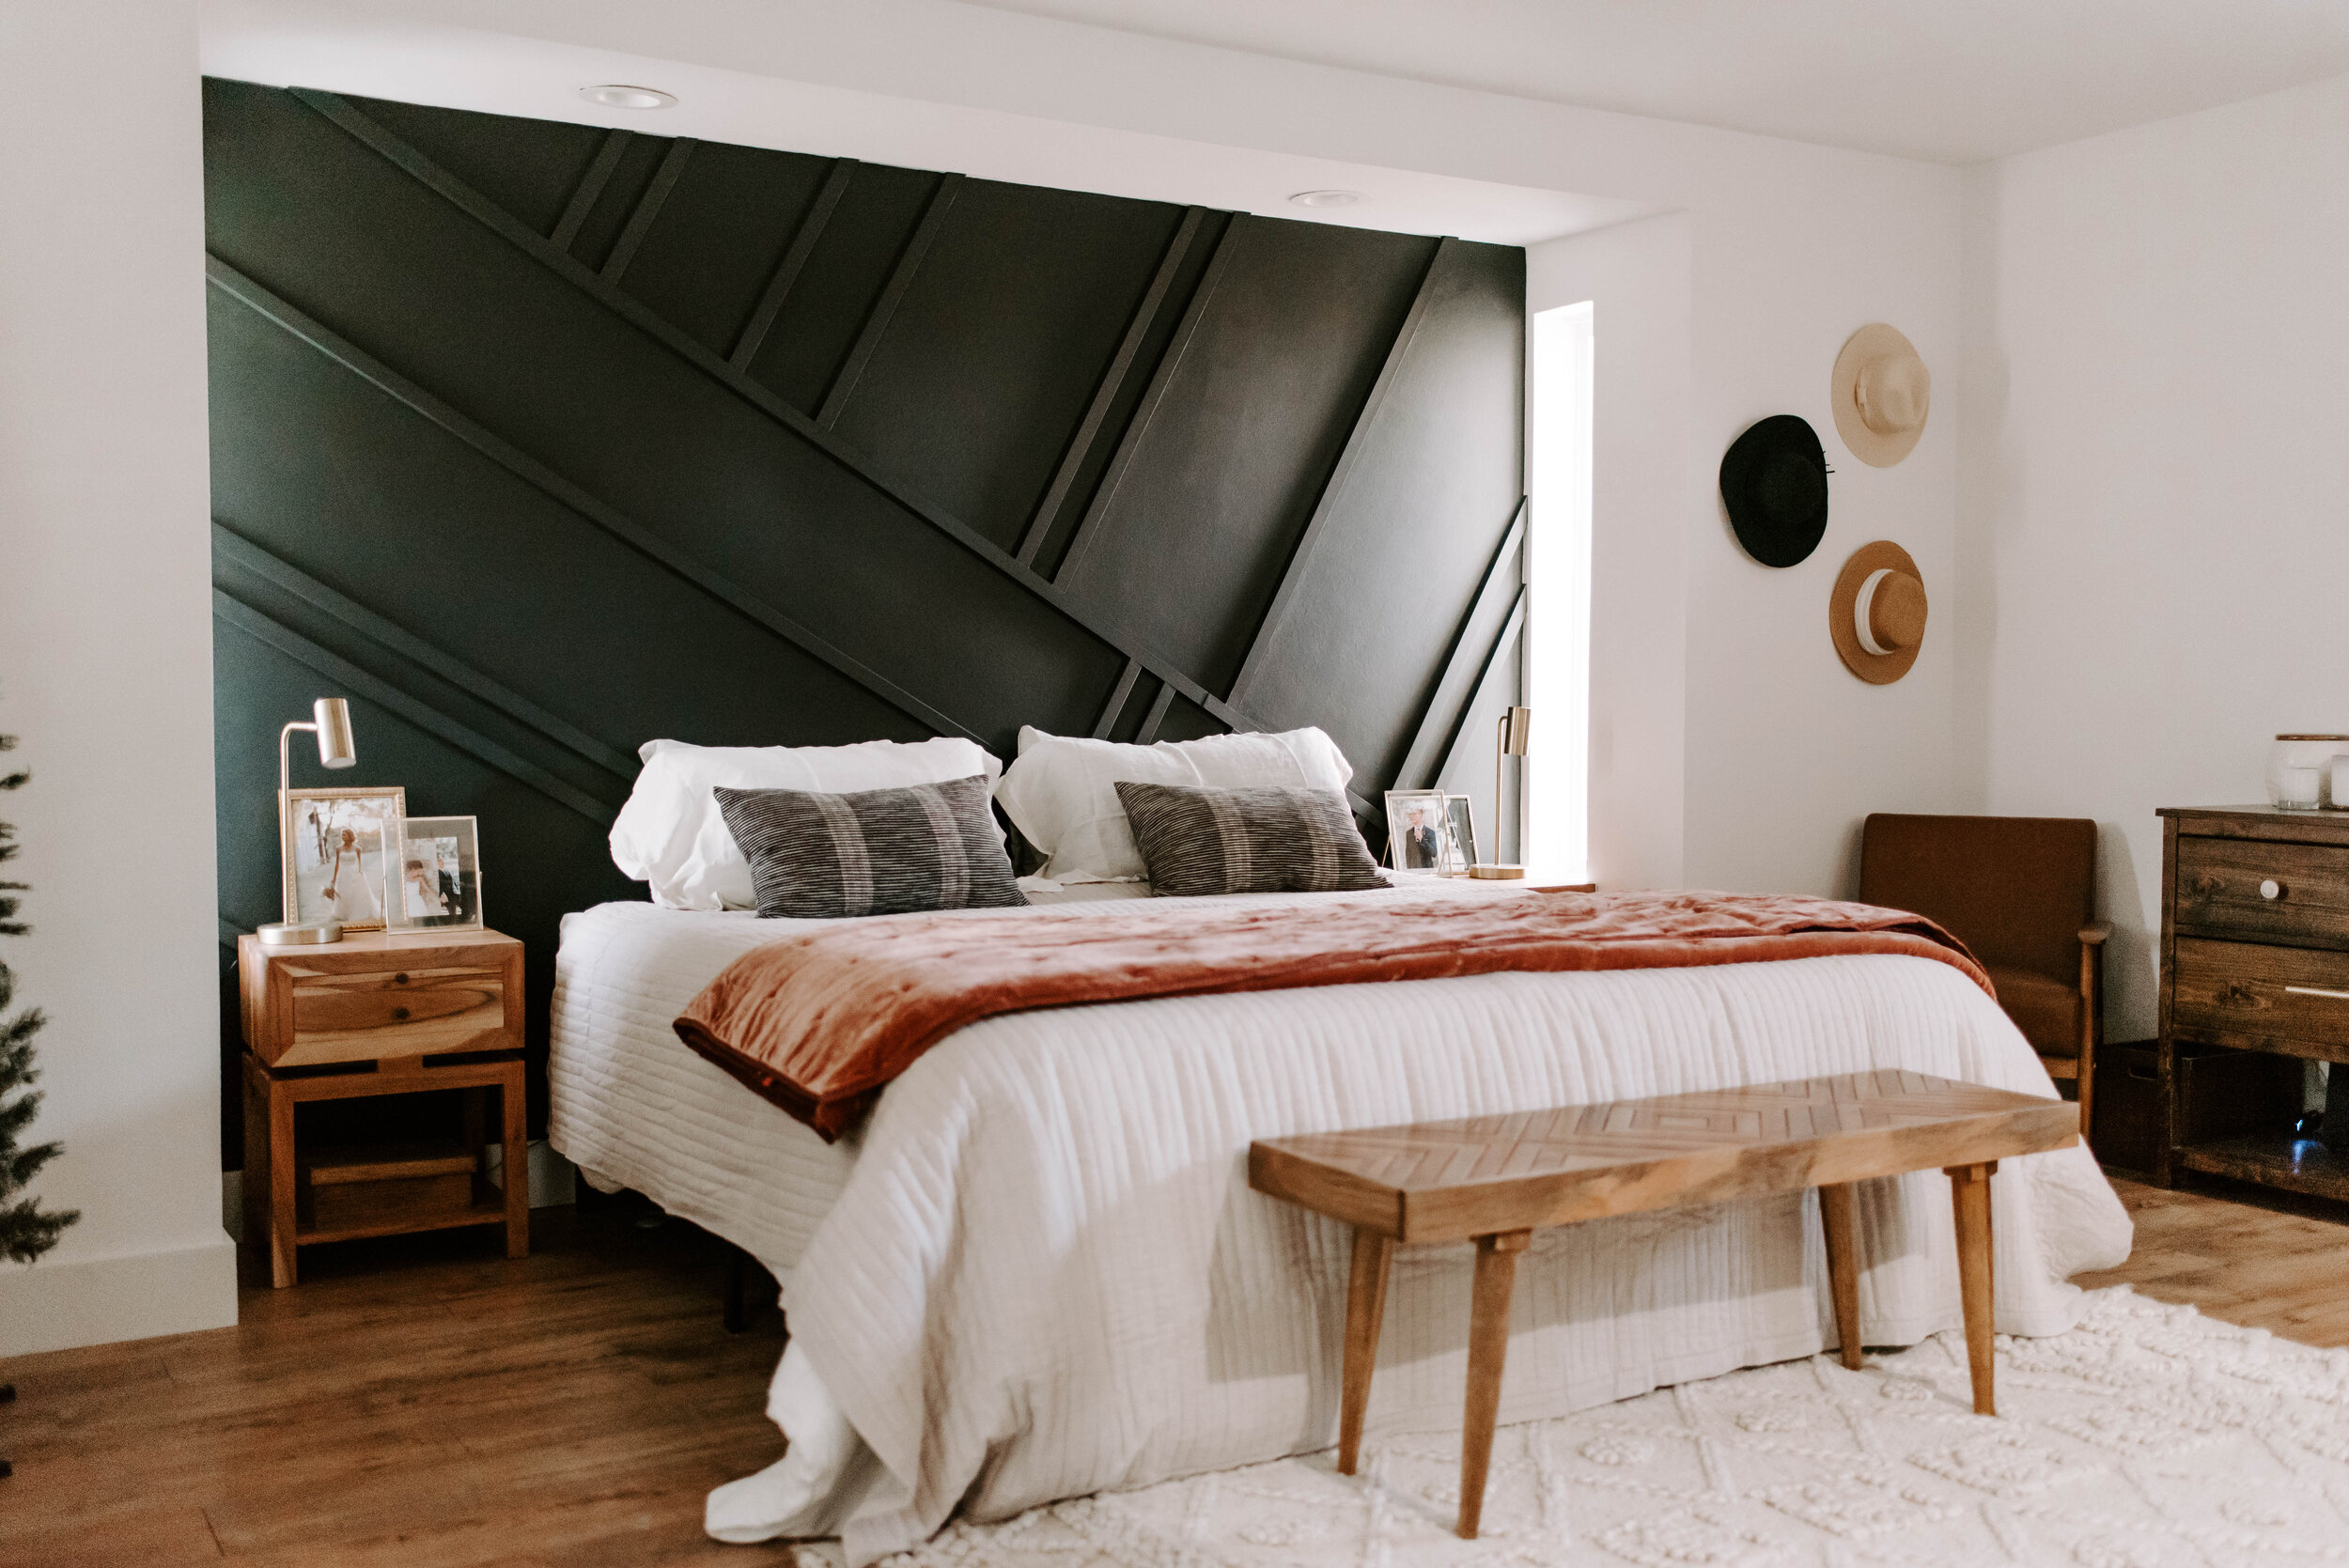 DIY Midcentury Bedroom Modern Wall-7426.JPG